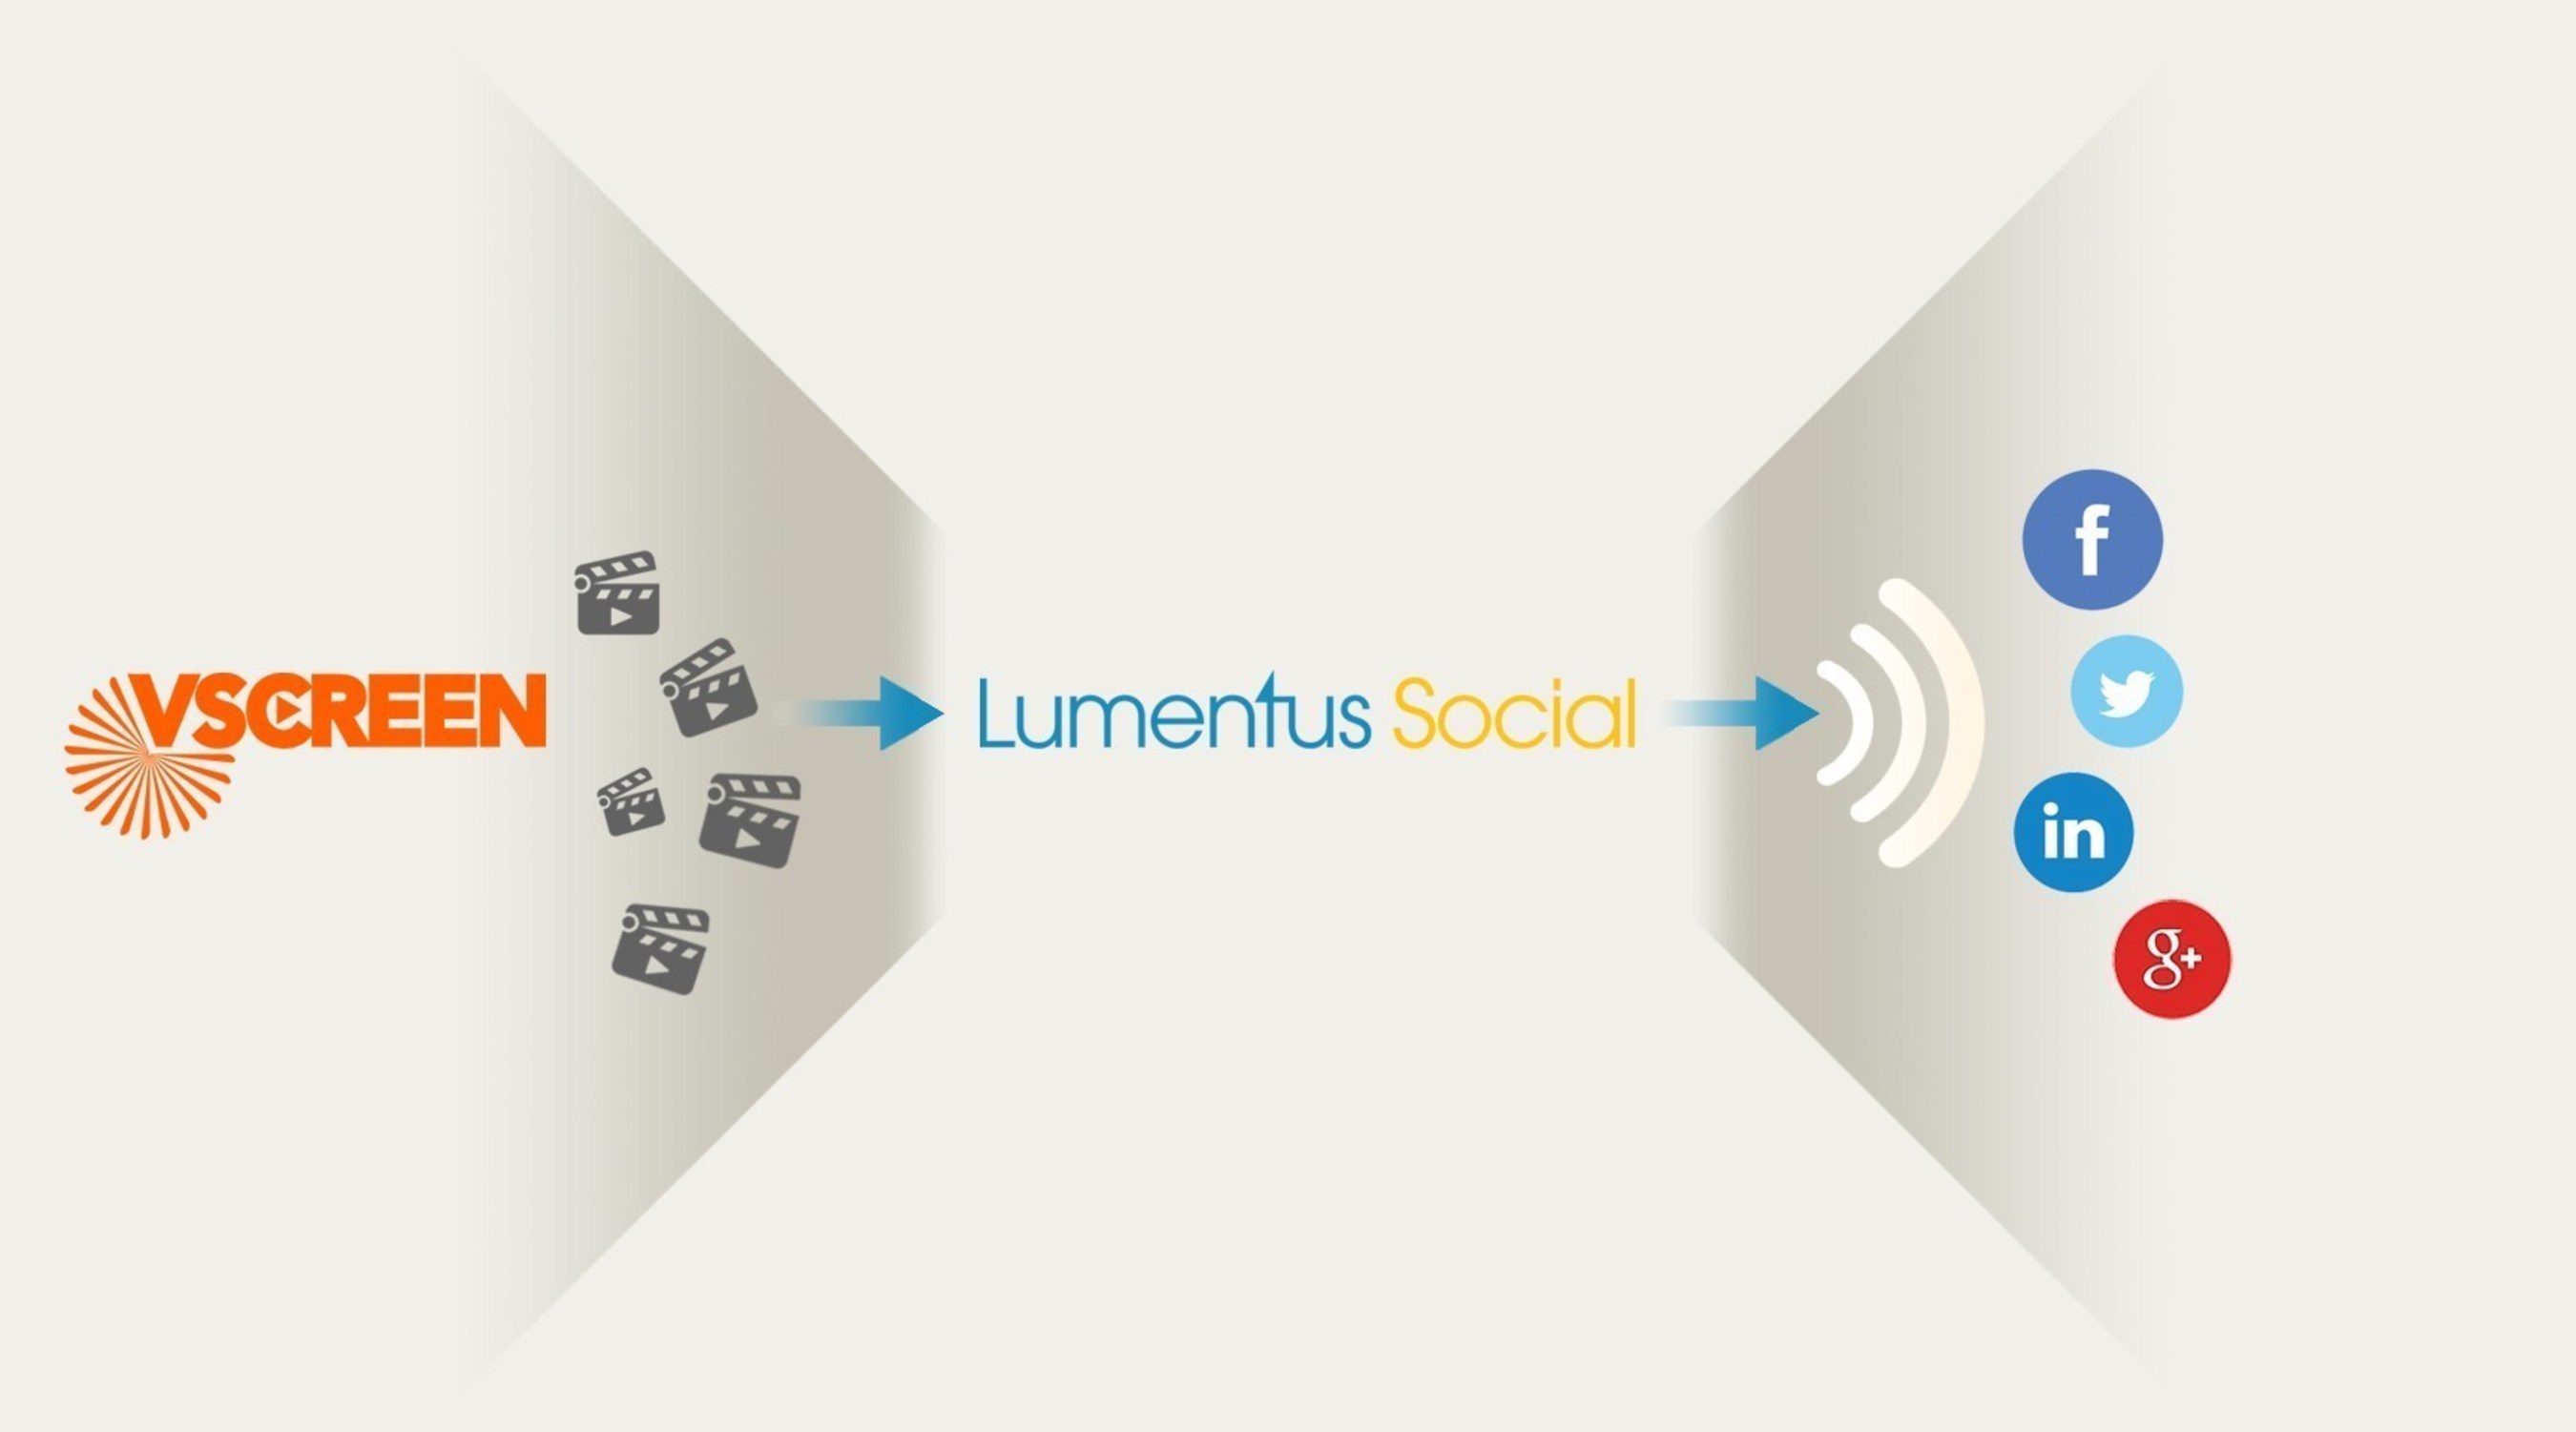 VScreen - Lumentus Social